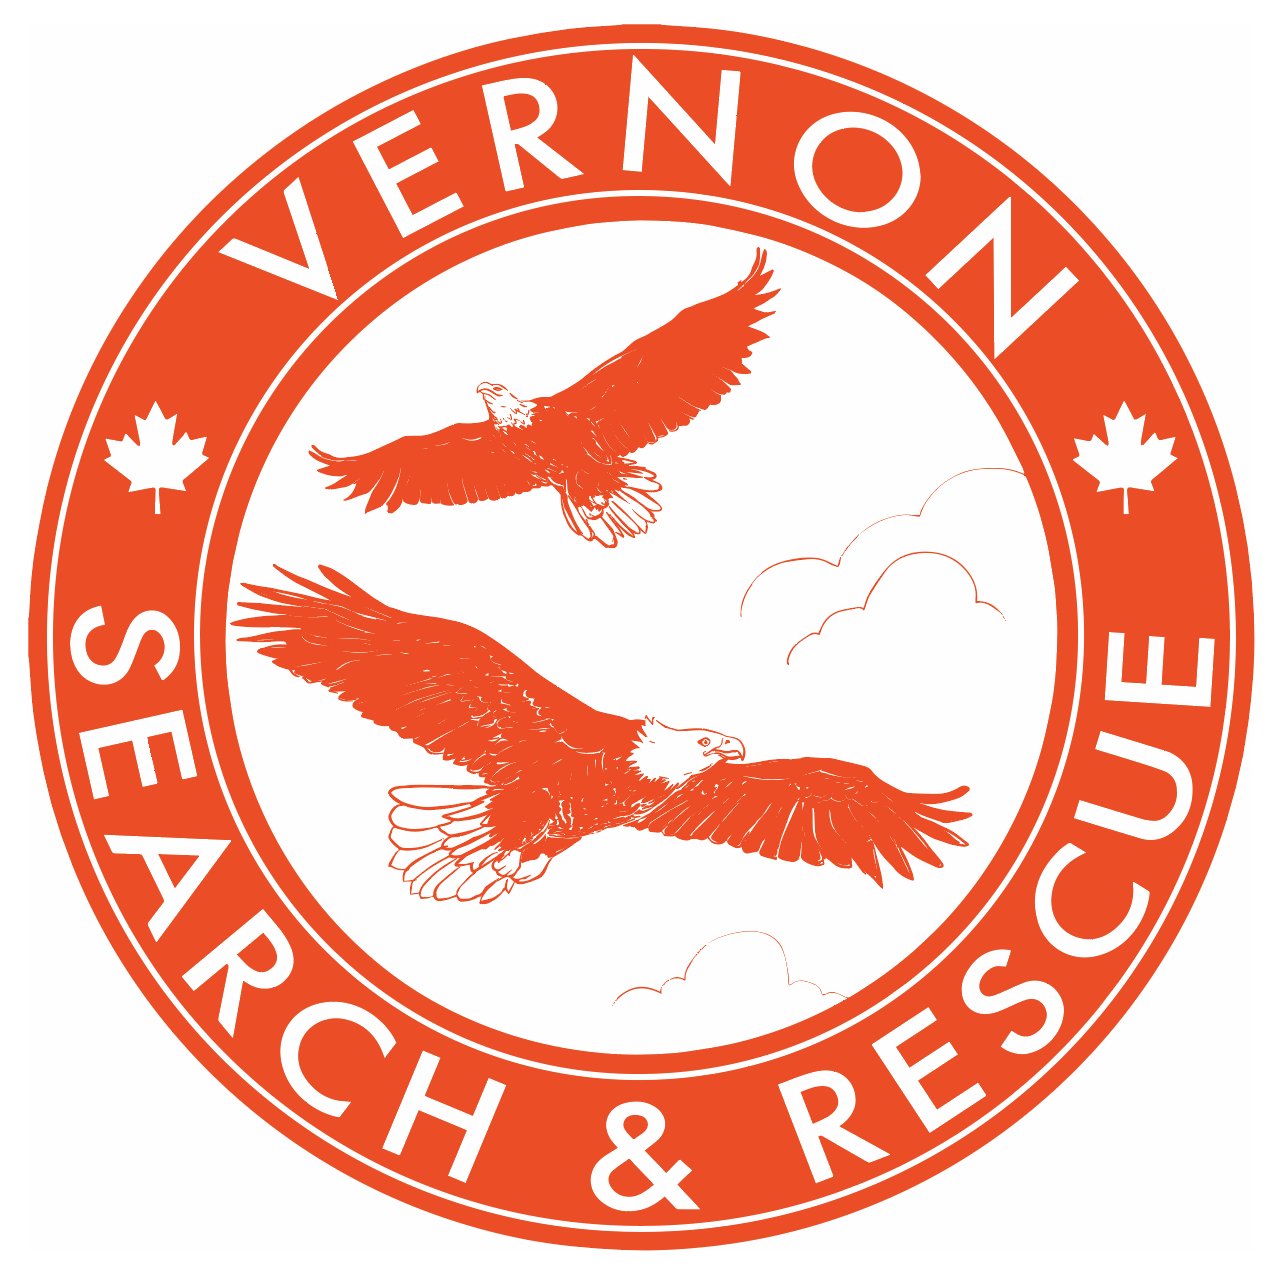 Vernon Search and Rescue